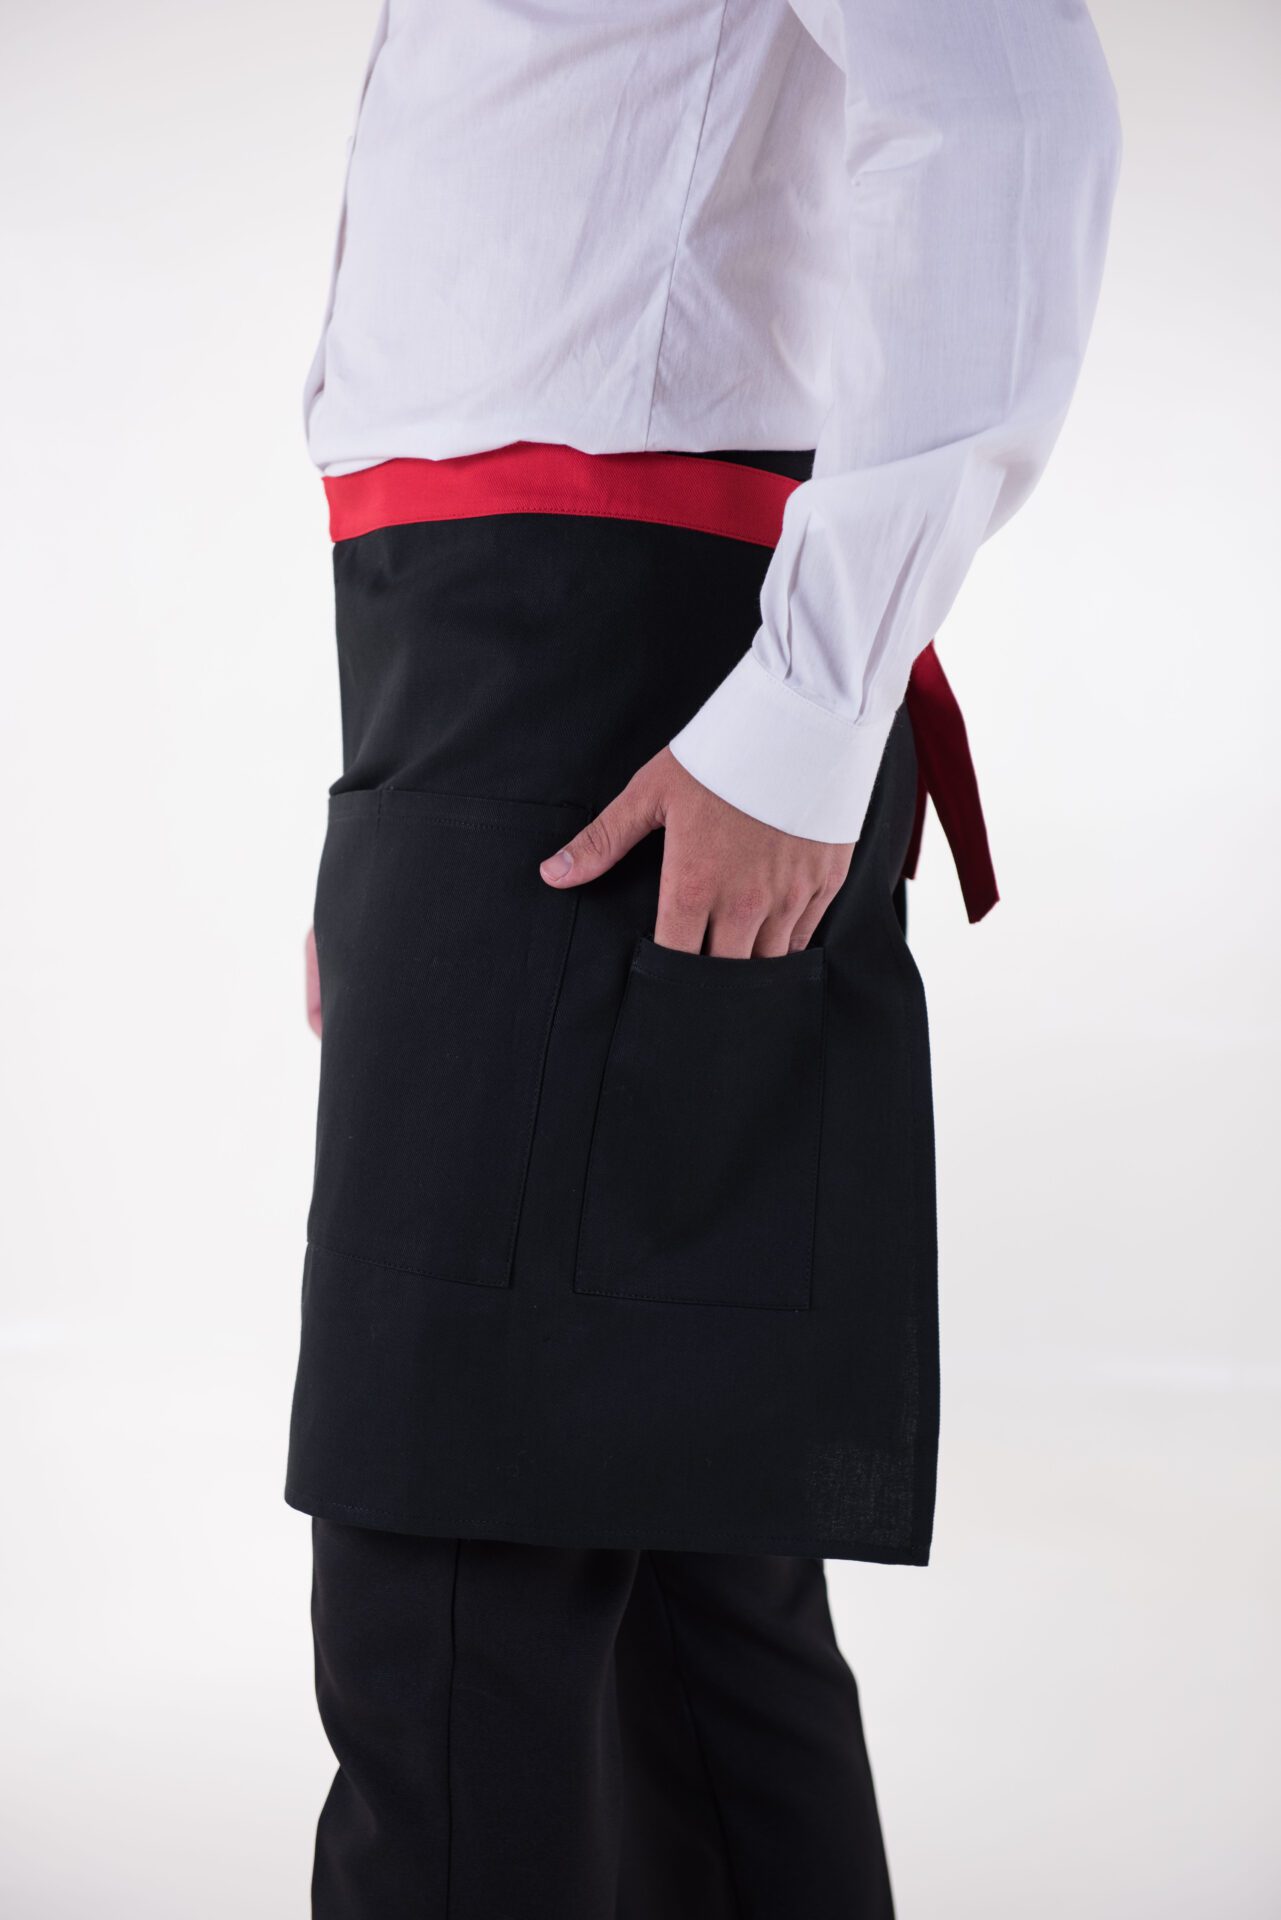 uniforme gastronomico delantal faldon unisex bolsillos parker